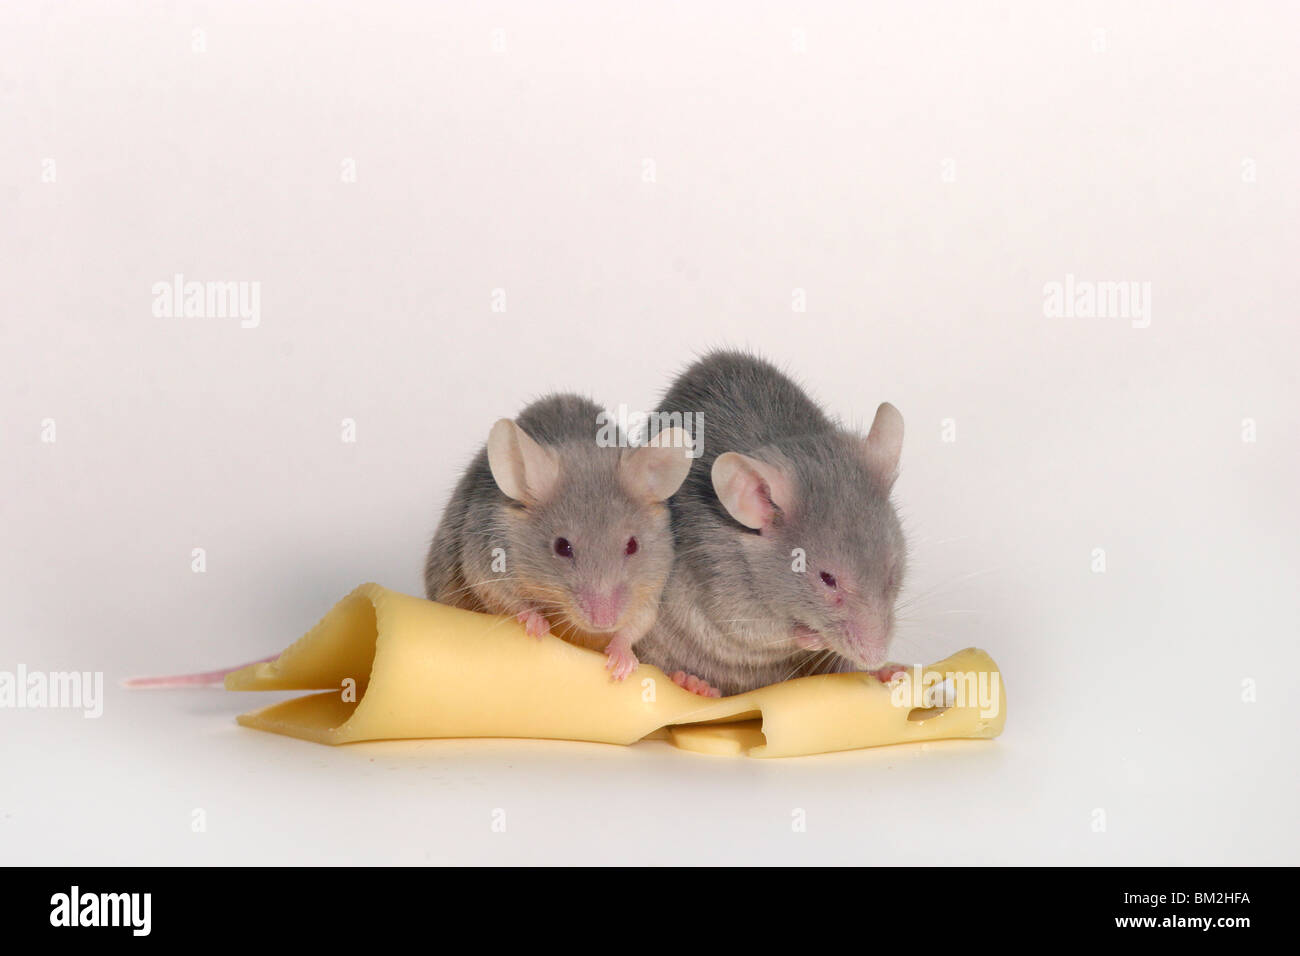 Mäuse mit Käse / mice with cheese Stock Photo